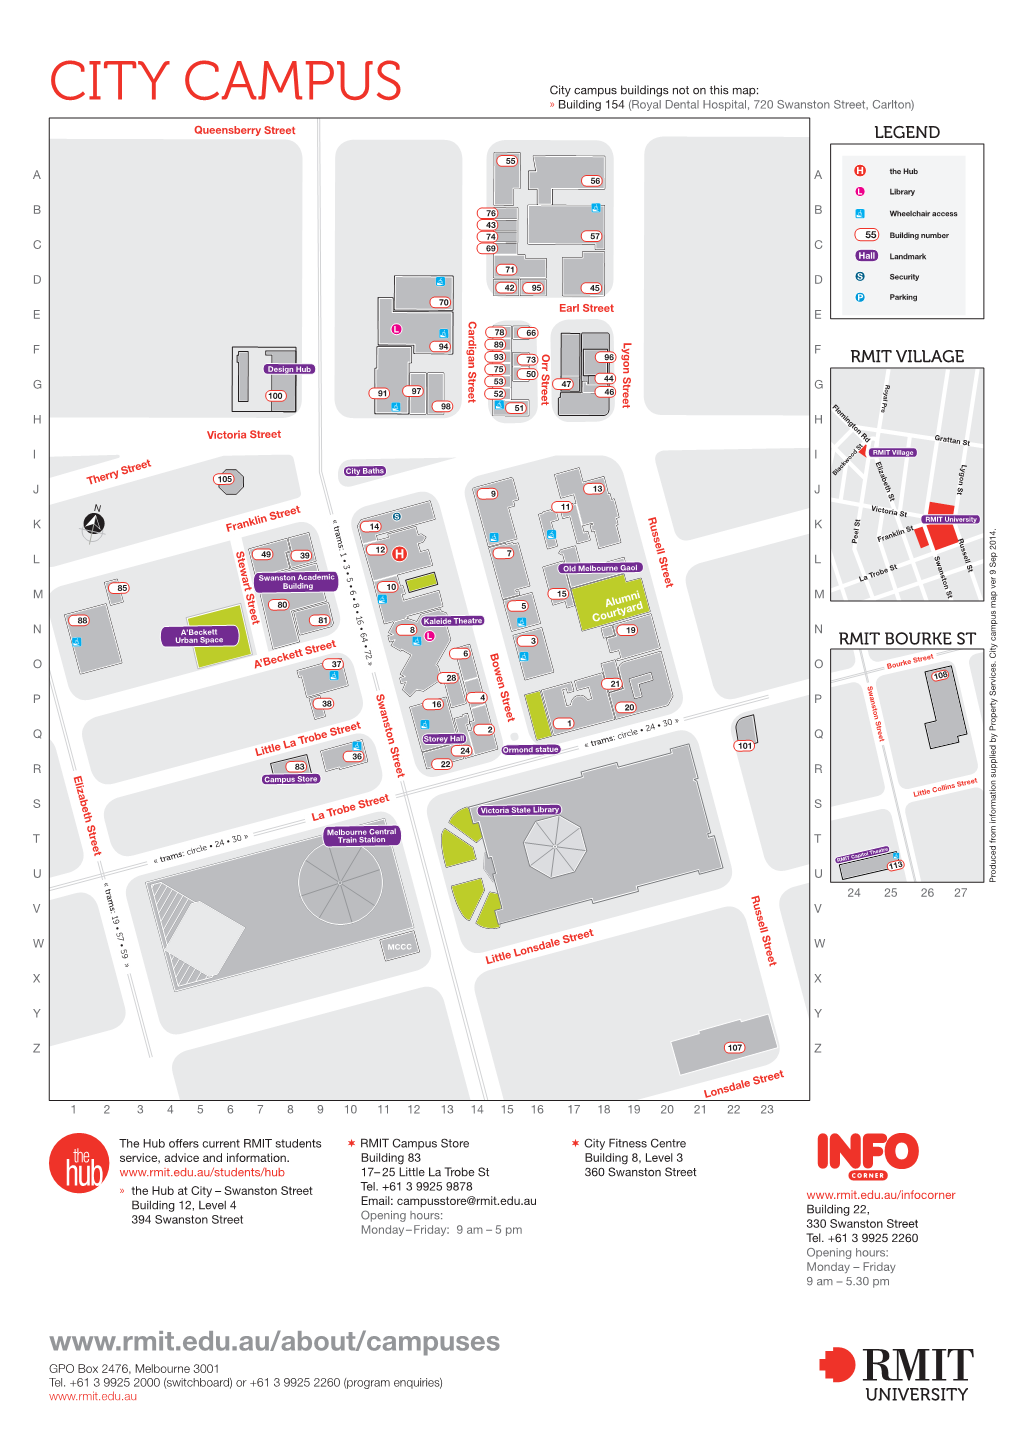 RMIT City Campus Map.Pdf